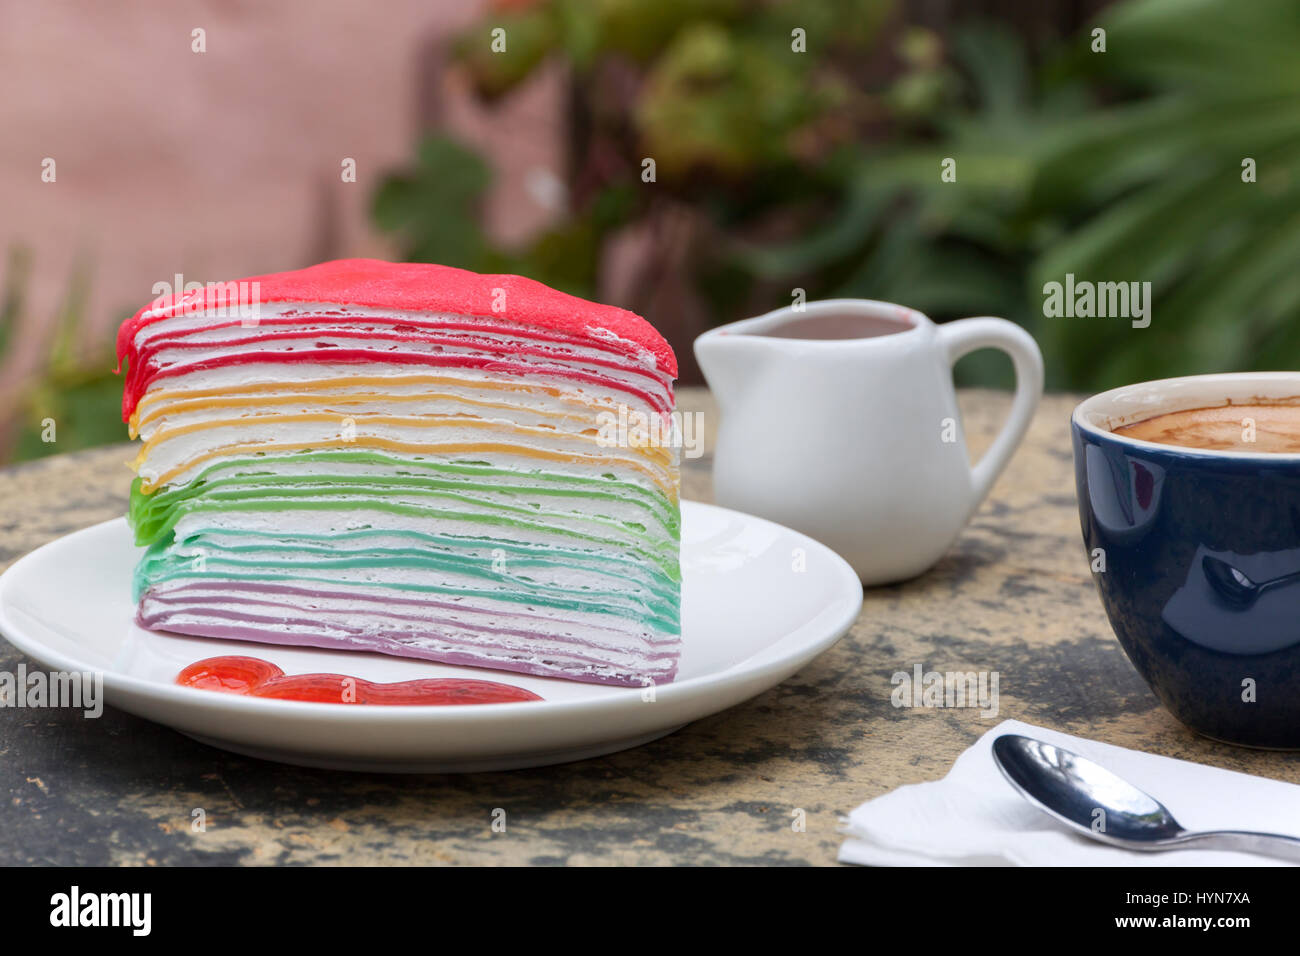 Torta arricciato arcobaleno e caldo di caffè espresso nel lato giardino home. arricciato torta con salsa di fragole Foto Stock